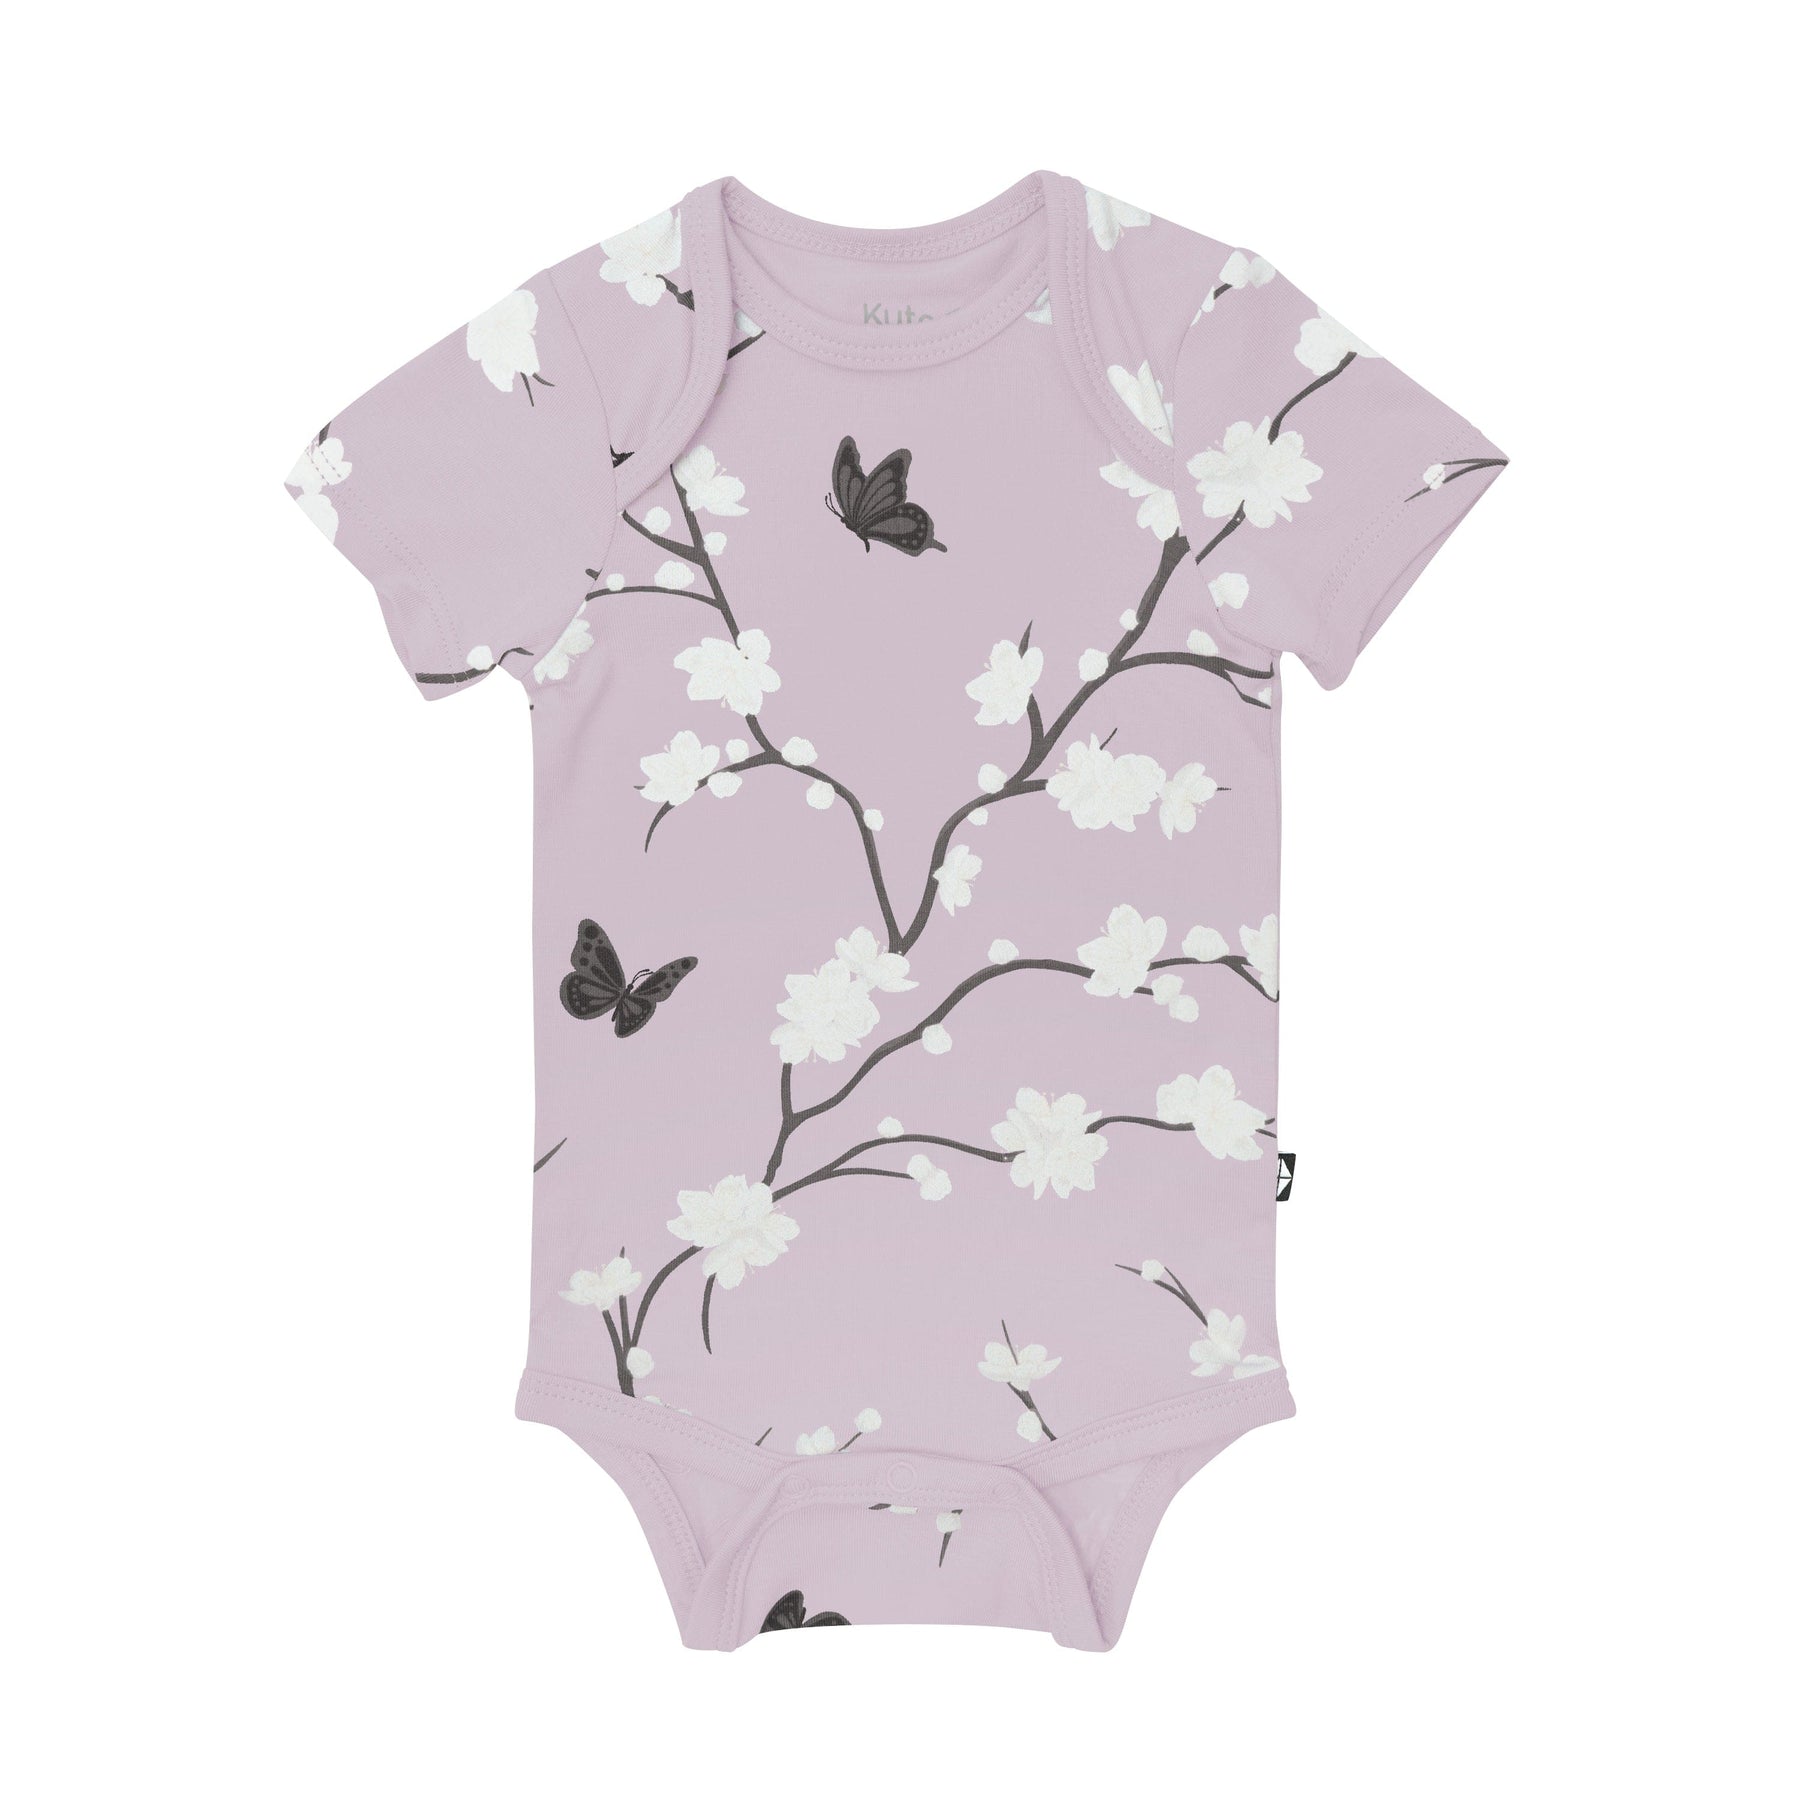 Kyte Baby Short Sleeve Bodysuits Bodysuit in Cherry Blossom